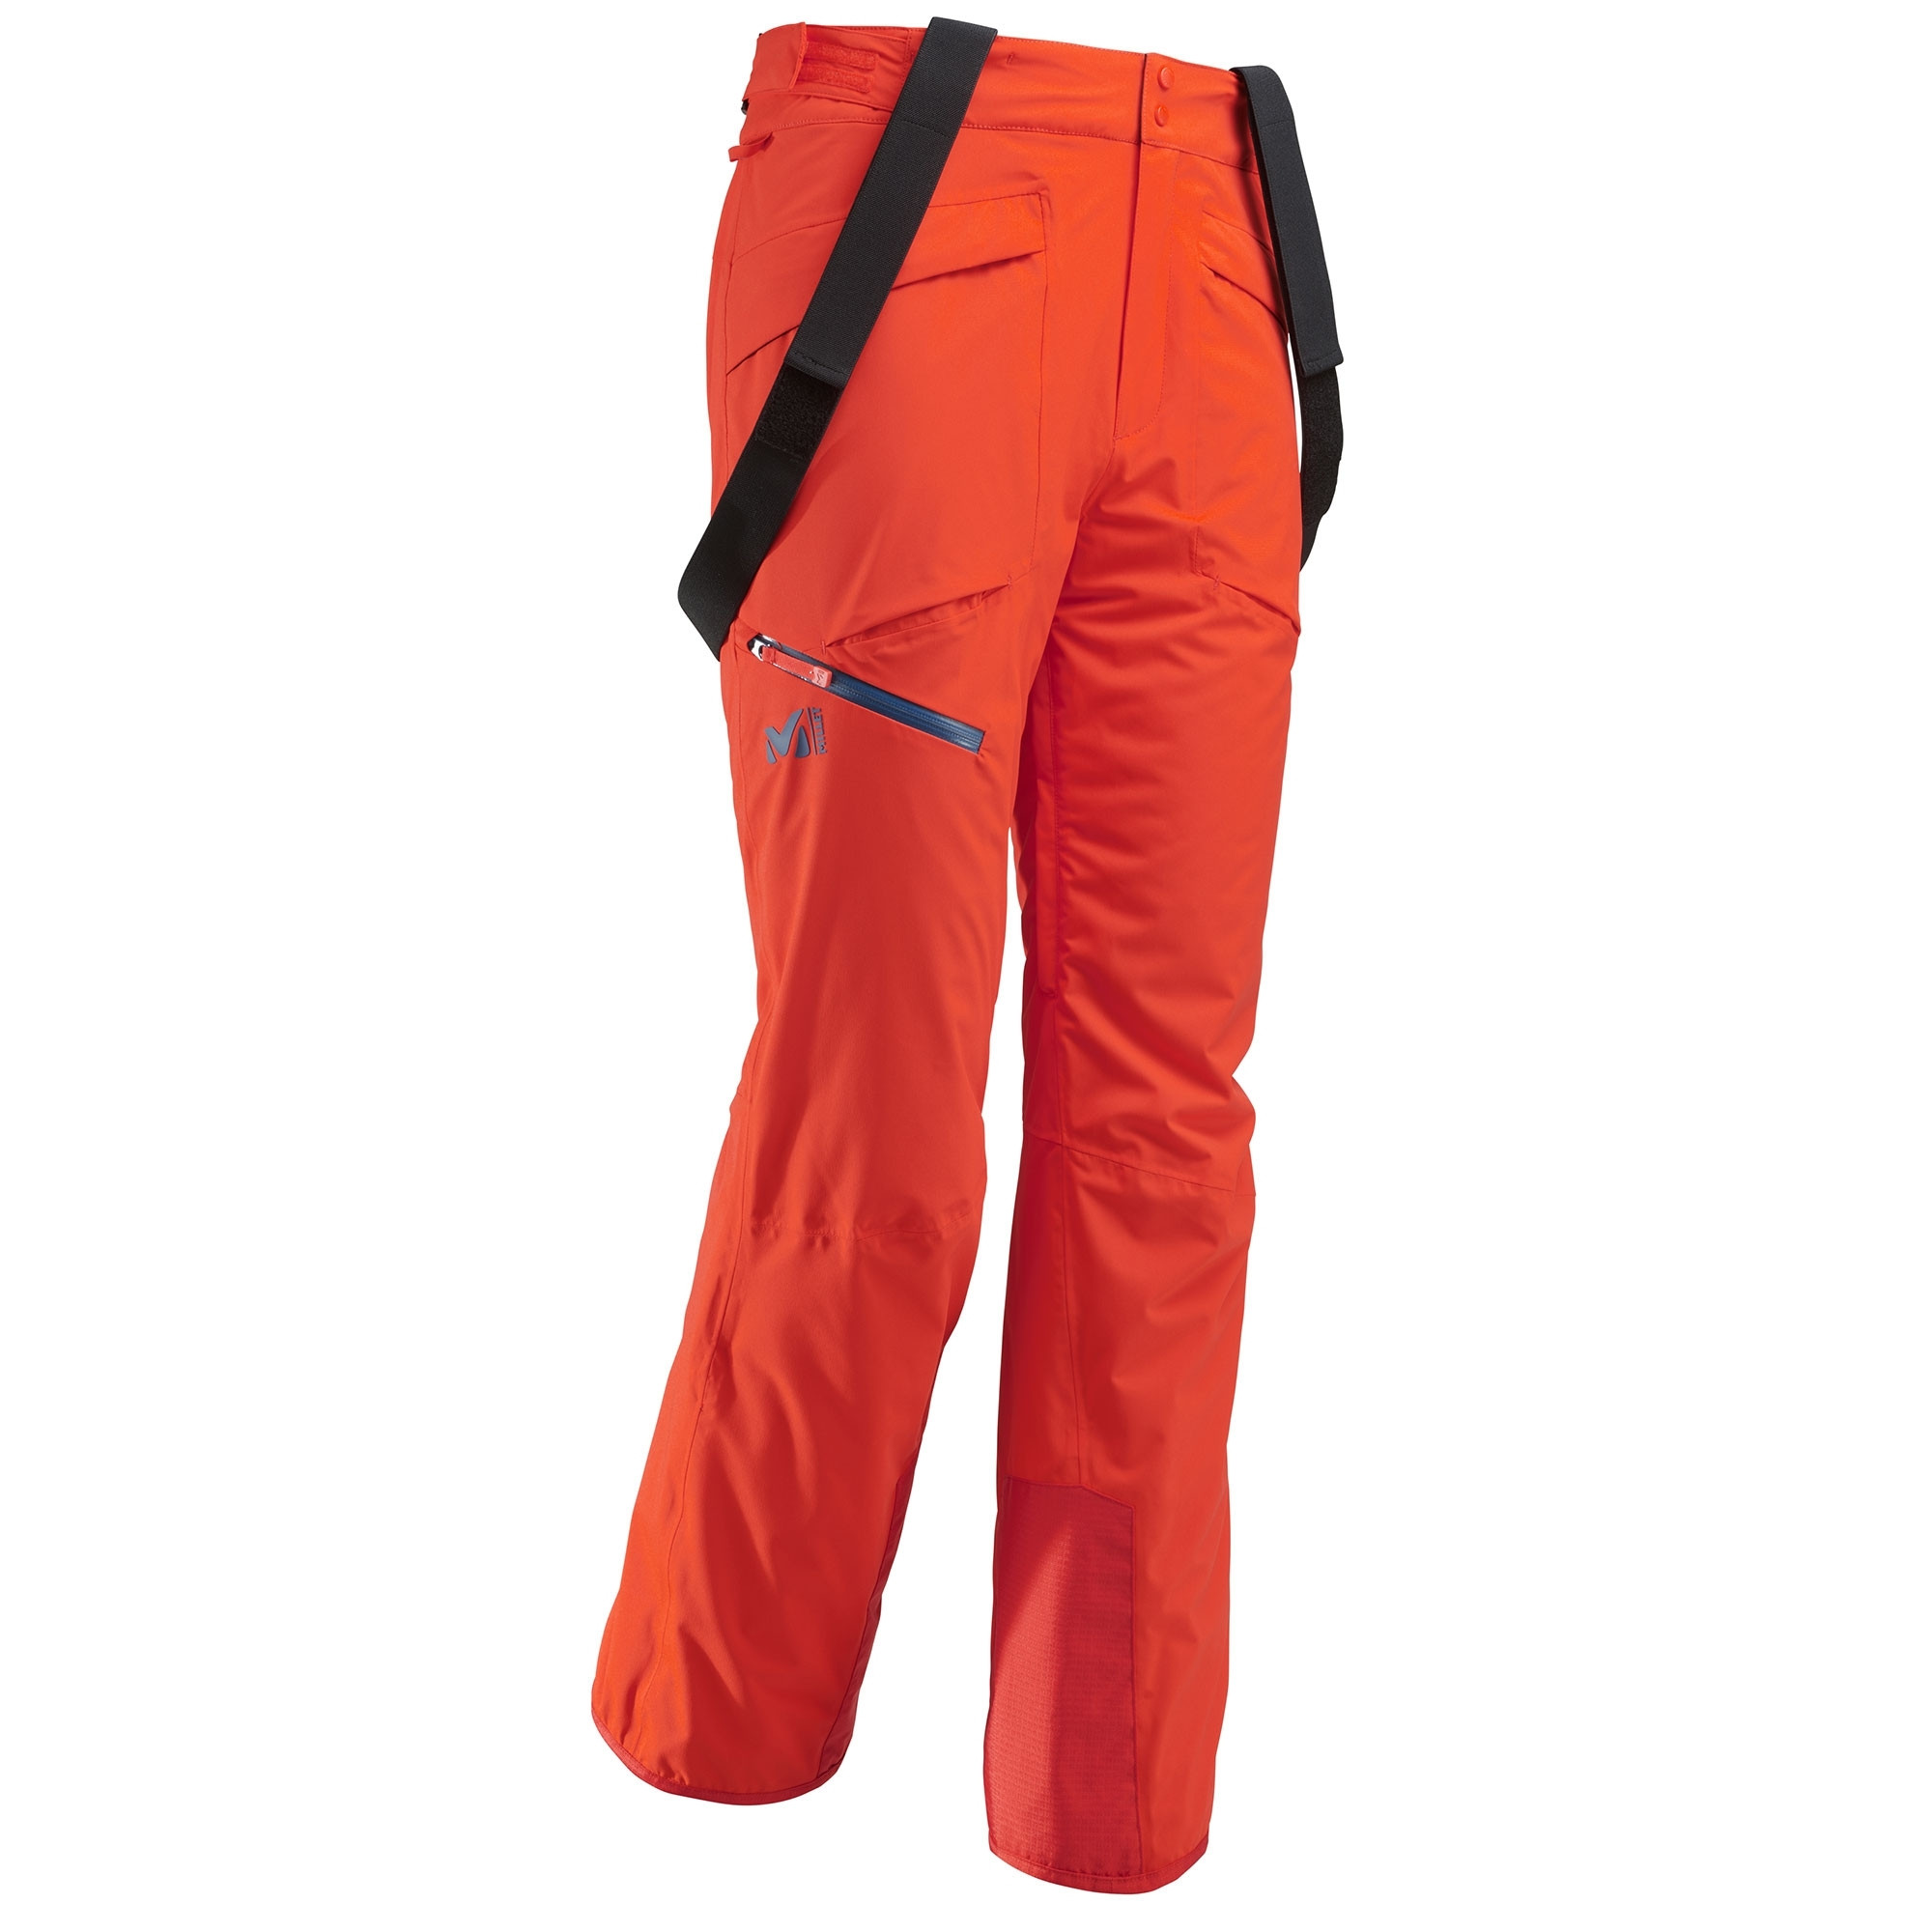 Pantalon de Ski Millet Hayes Stretch Orange Homme - Livraison Gratuite !